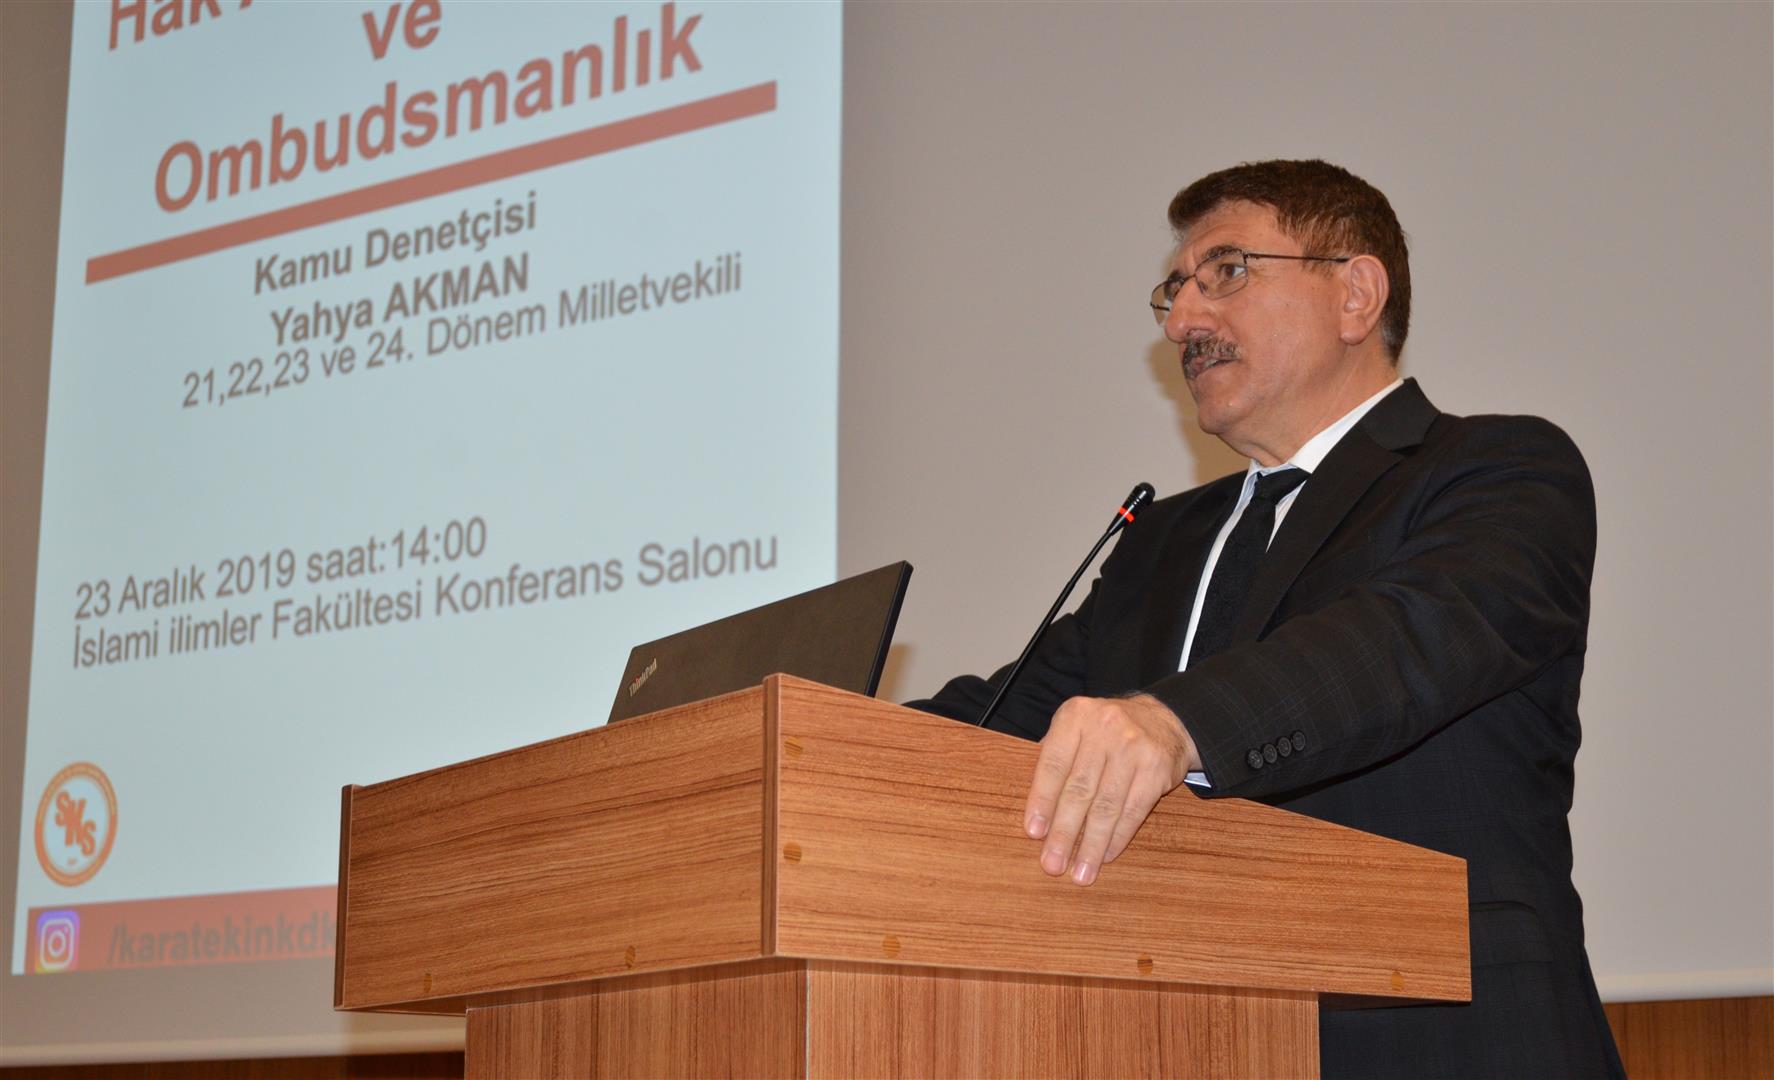 Hak Arama Kültürü ve Ombudsmanlık Konferansı Gerçekleştirildi